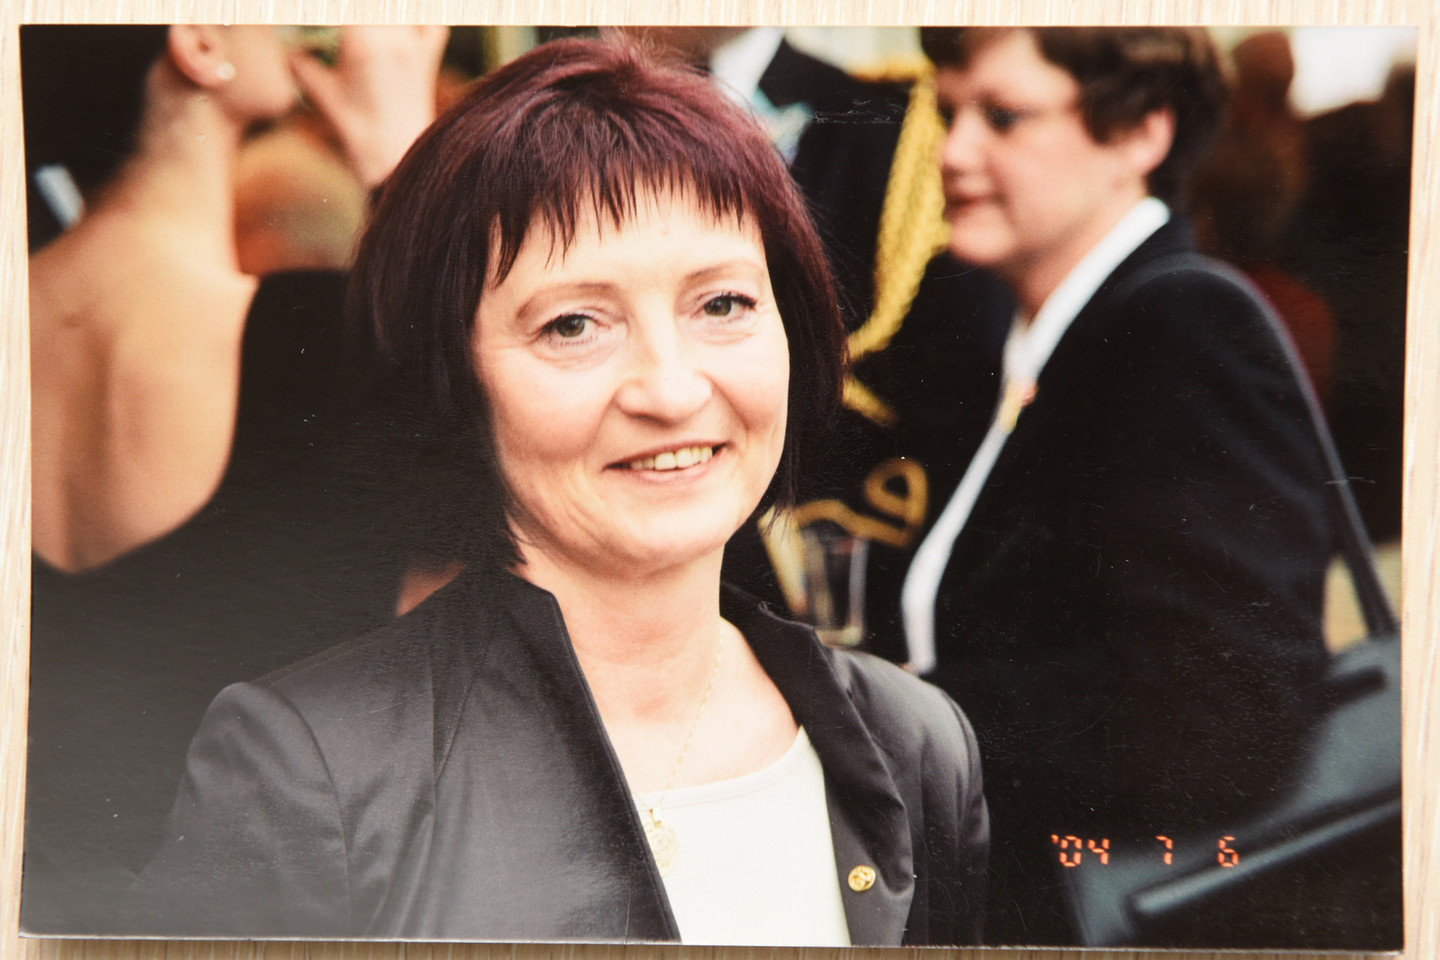 Lietuvos televizijos užsienio naujienų komentatorė Jolanta Paškevičiūtė turėjo valdingą mamą, kuri mokė ją elgtis ryžtingai<br>D.Umbraso nuotr.